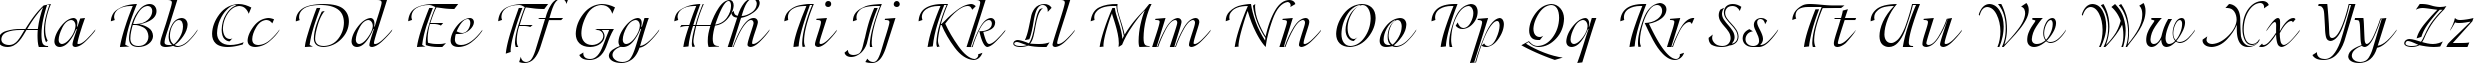 Пример написания английского алфавита шрифтом Adorable